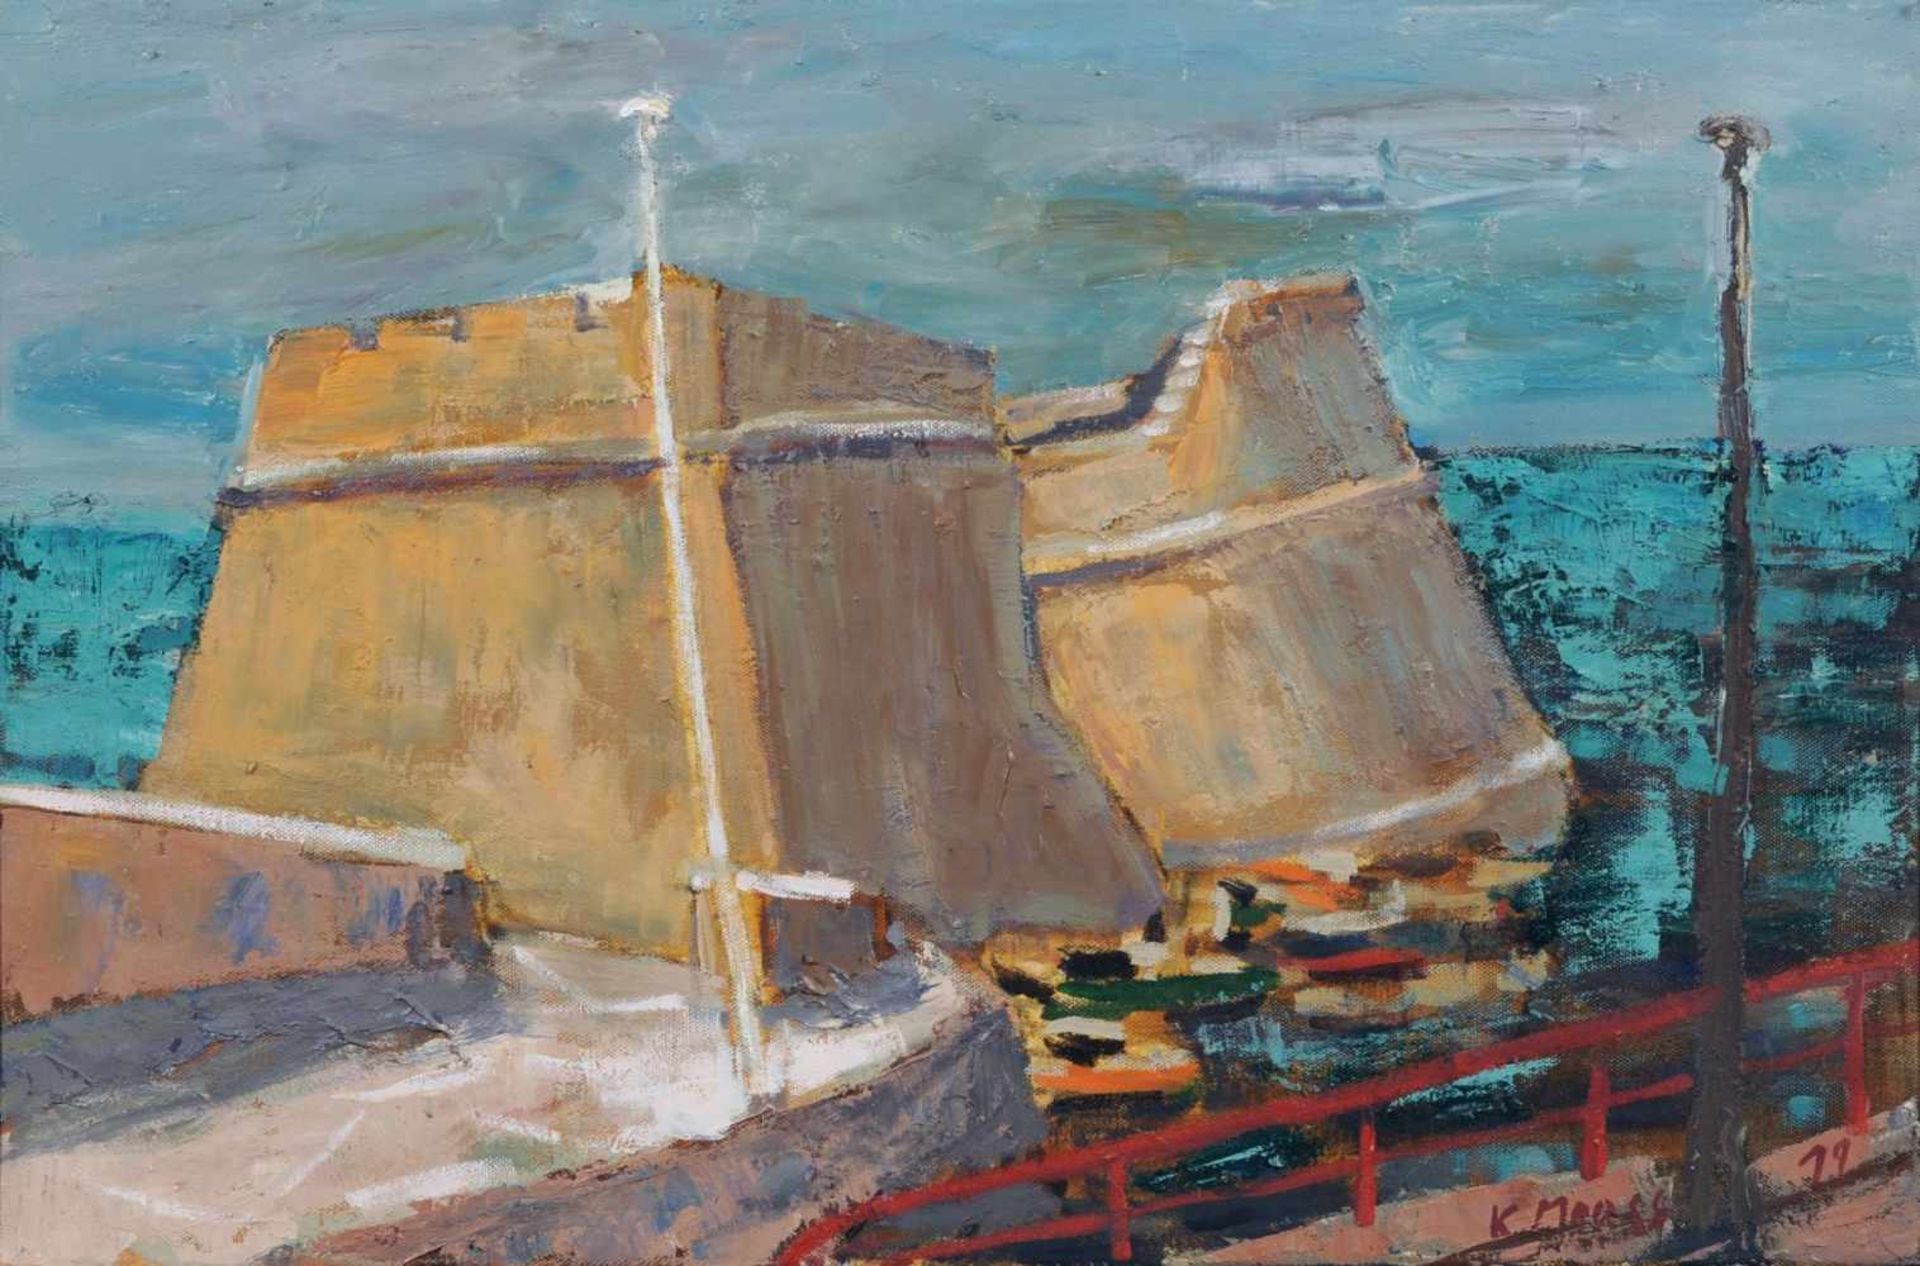 Konrad Maass "Römische Hafenanlage auf Kreta". 2011. Öl auf Leinwand. Signiert "K. Maass" sowie